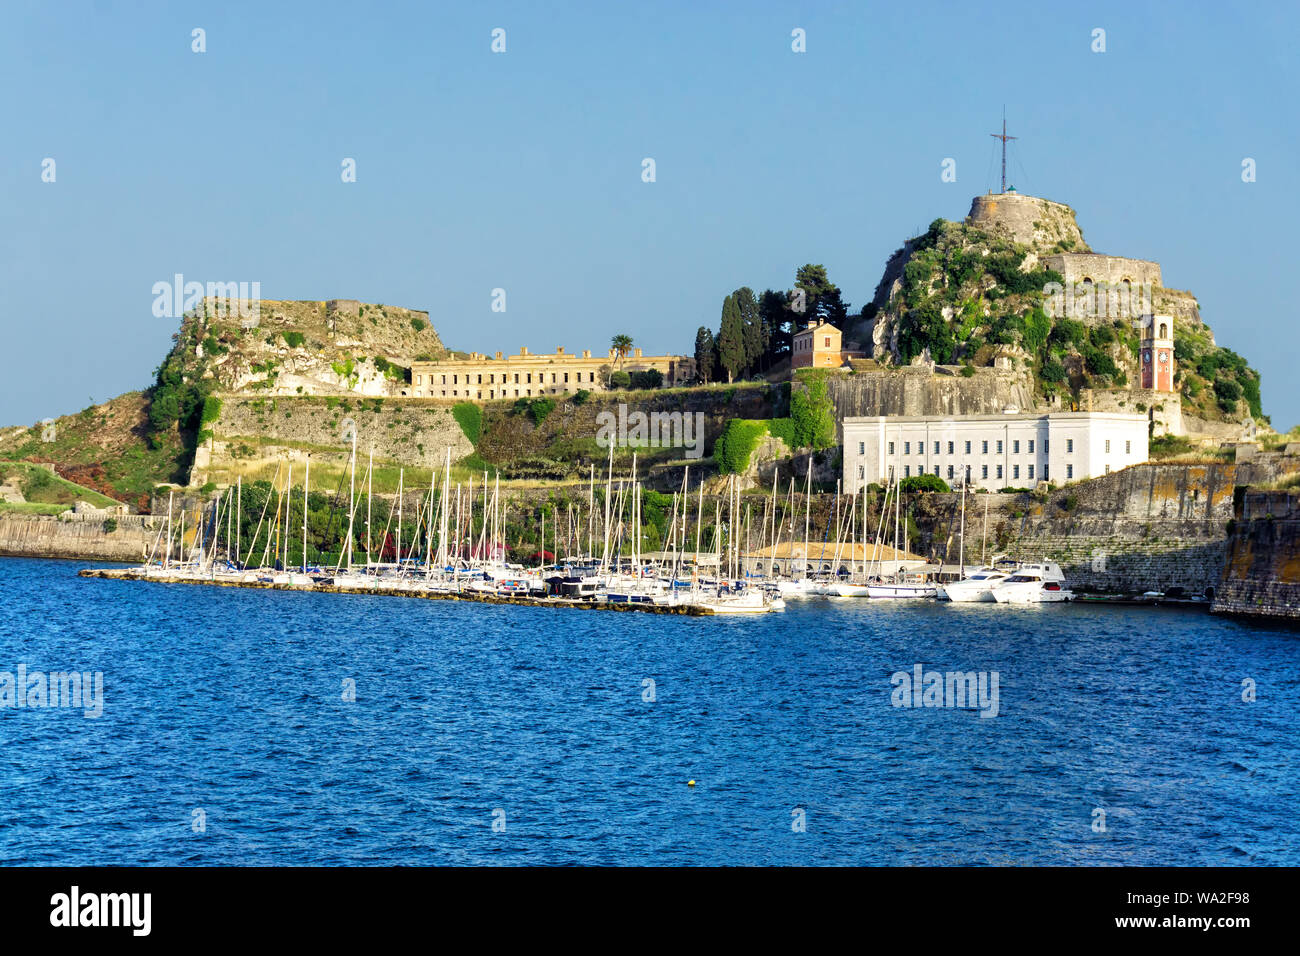 Old fortress with boats in Corfu Town (Kerkyra), Corfu Greece Stock Photo